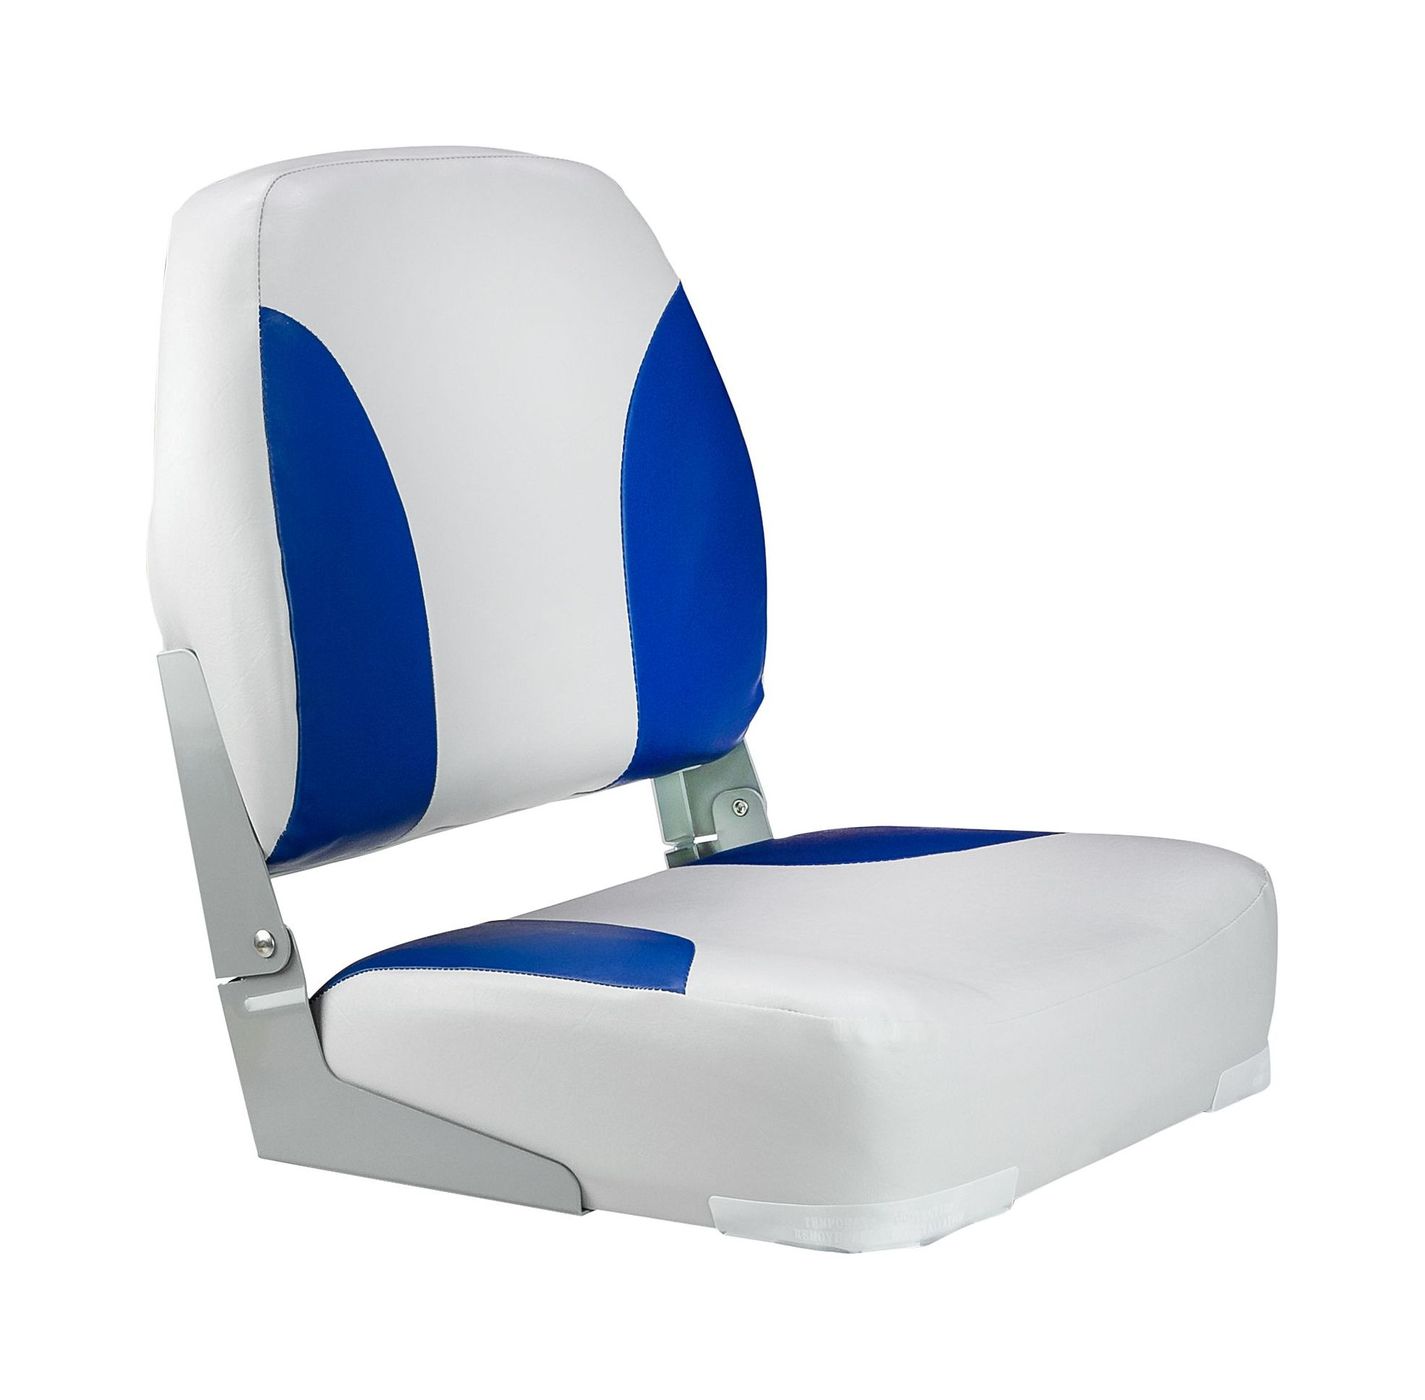 Кресло мягкое складное Classic, обивка винил, цвет серый/синий, Marine Rocket 75102GB-MR гамак полотняный 90х200 см хлопок общая длина 280 см темно синий 100 кг полоска lg12